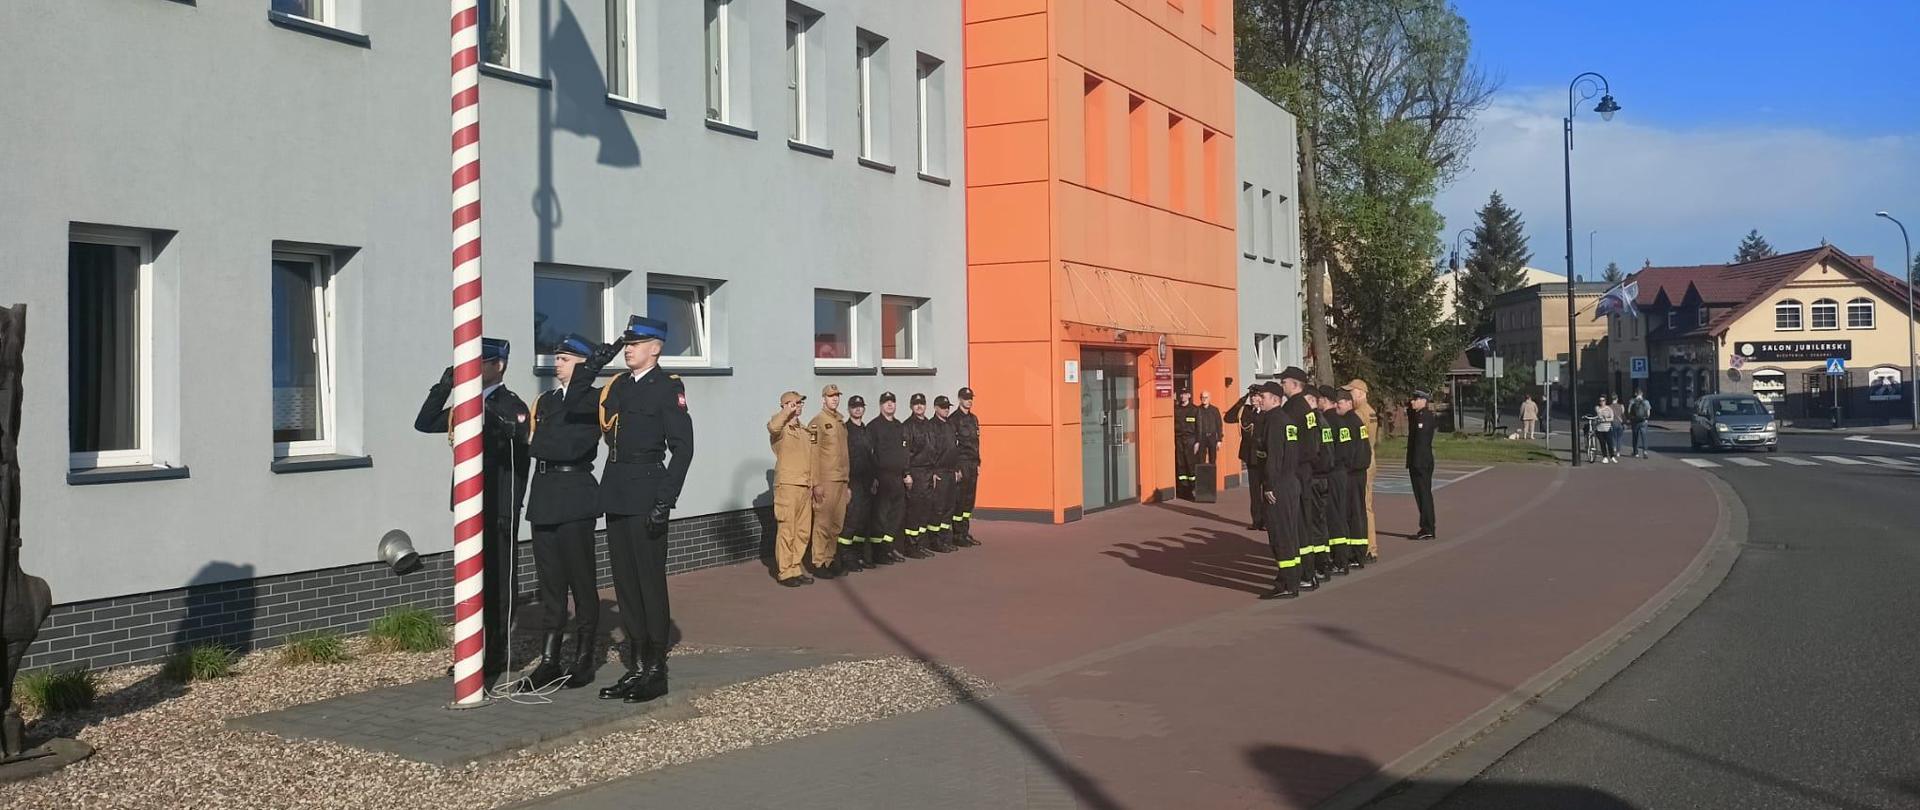 Zdjęcie wykonane na zewnątrz. Słoneczna pogoda. Na zdjęciu widoczni strażacy podczas uroczystej zbiórki z okazji Dnia Flagi państwowej RP. W tle budynek Komendy.